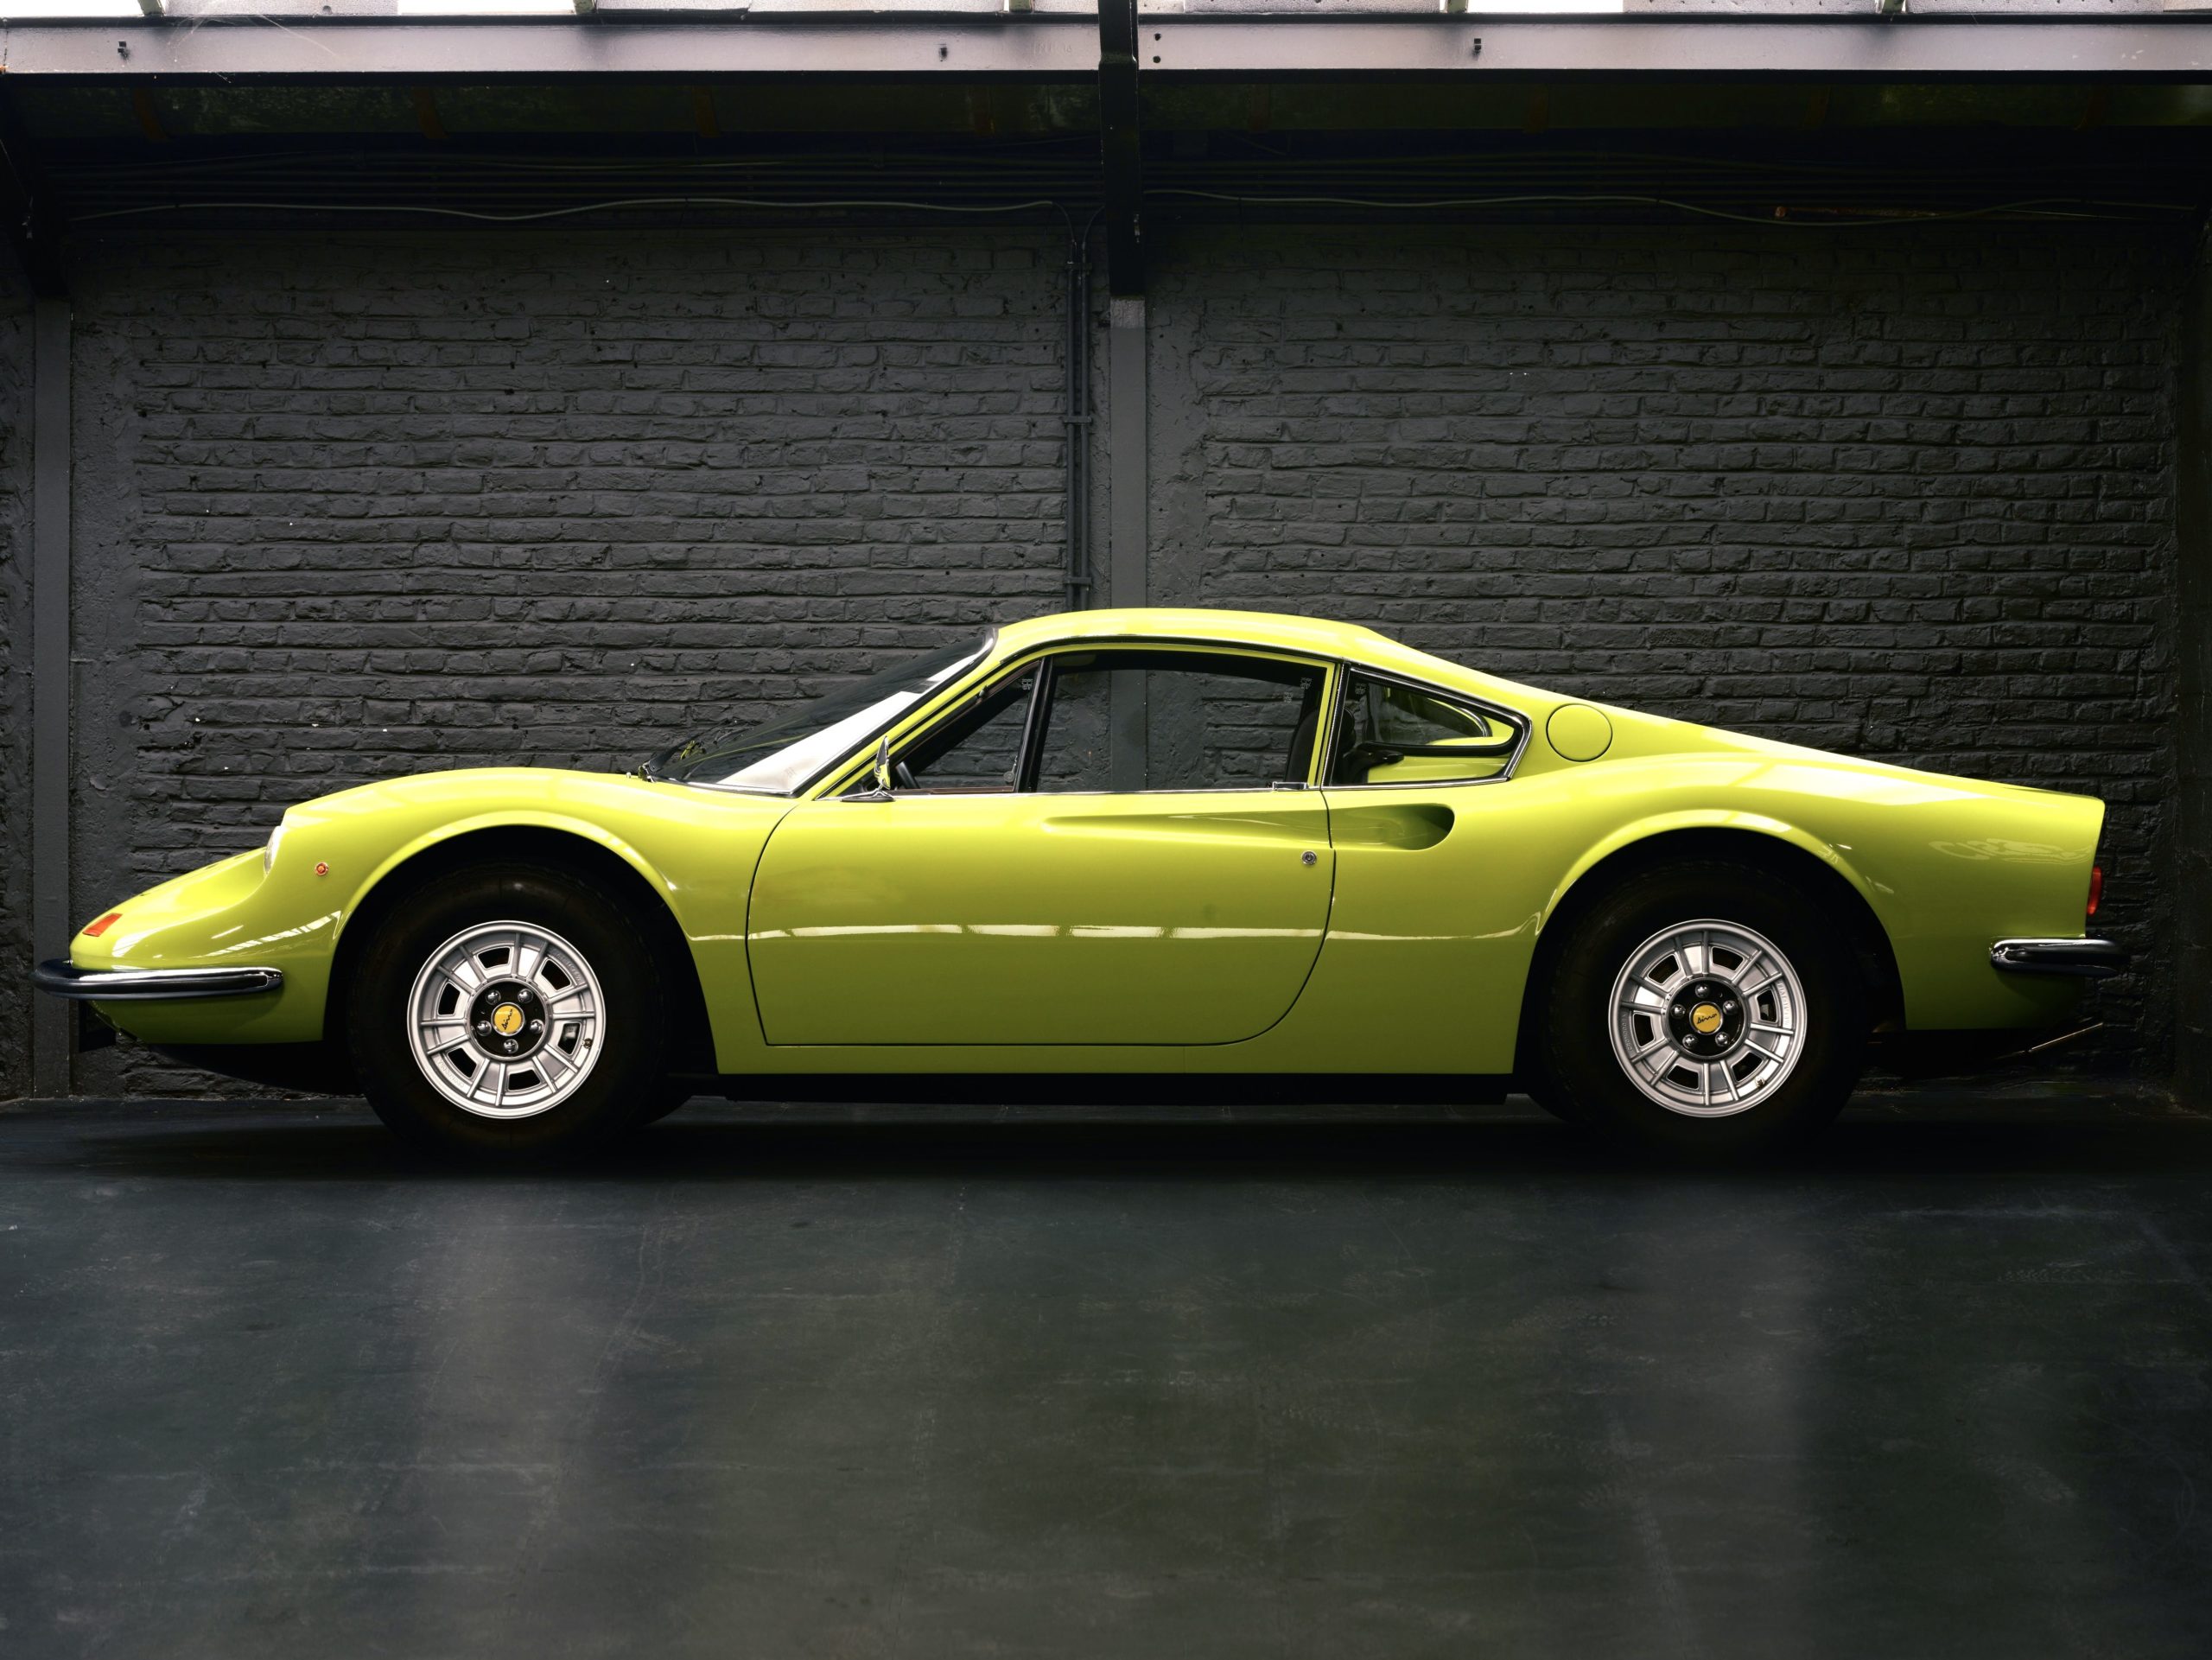 1971 fully restaured Ferrari Dino 246 GT